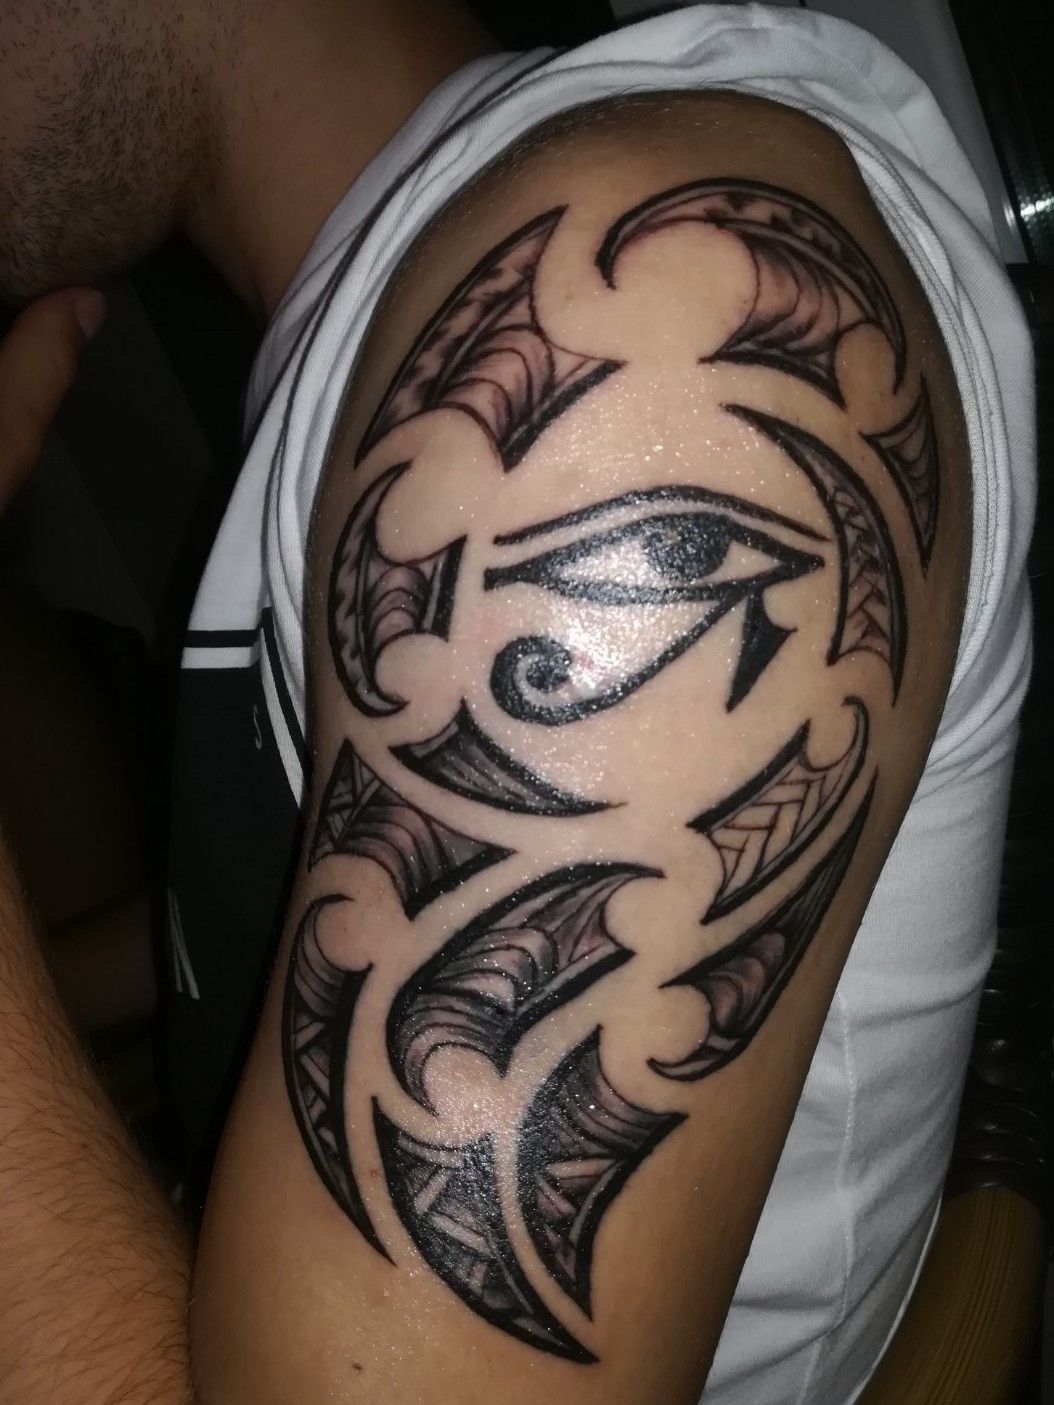 Tattoo uploaded by Mario  Maoritribal with eye of horus  Tattoodo